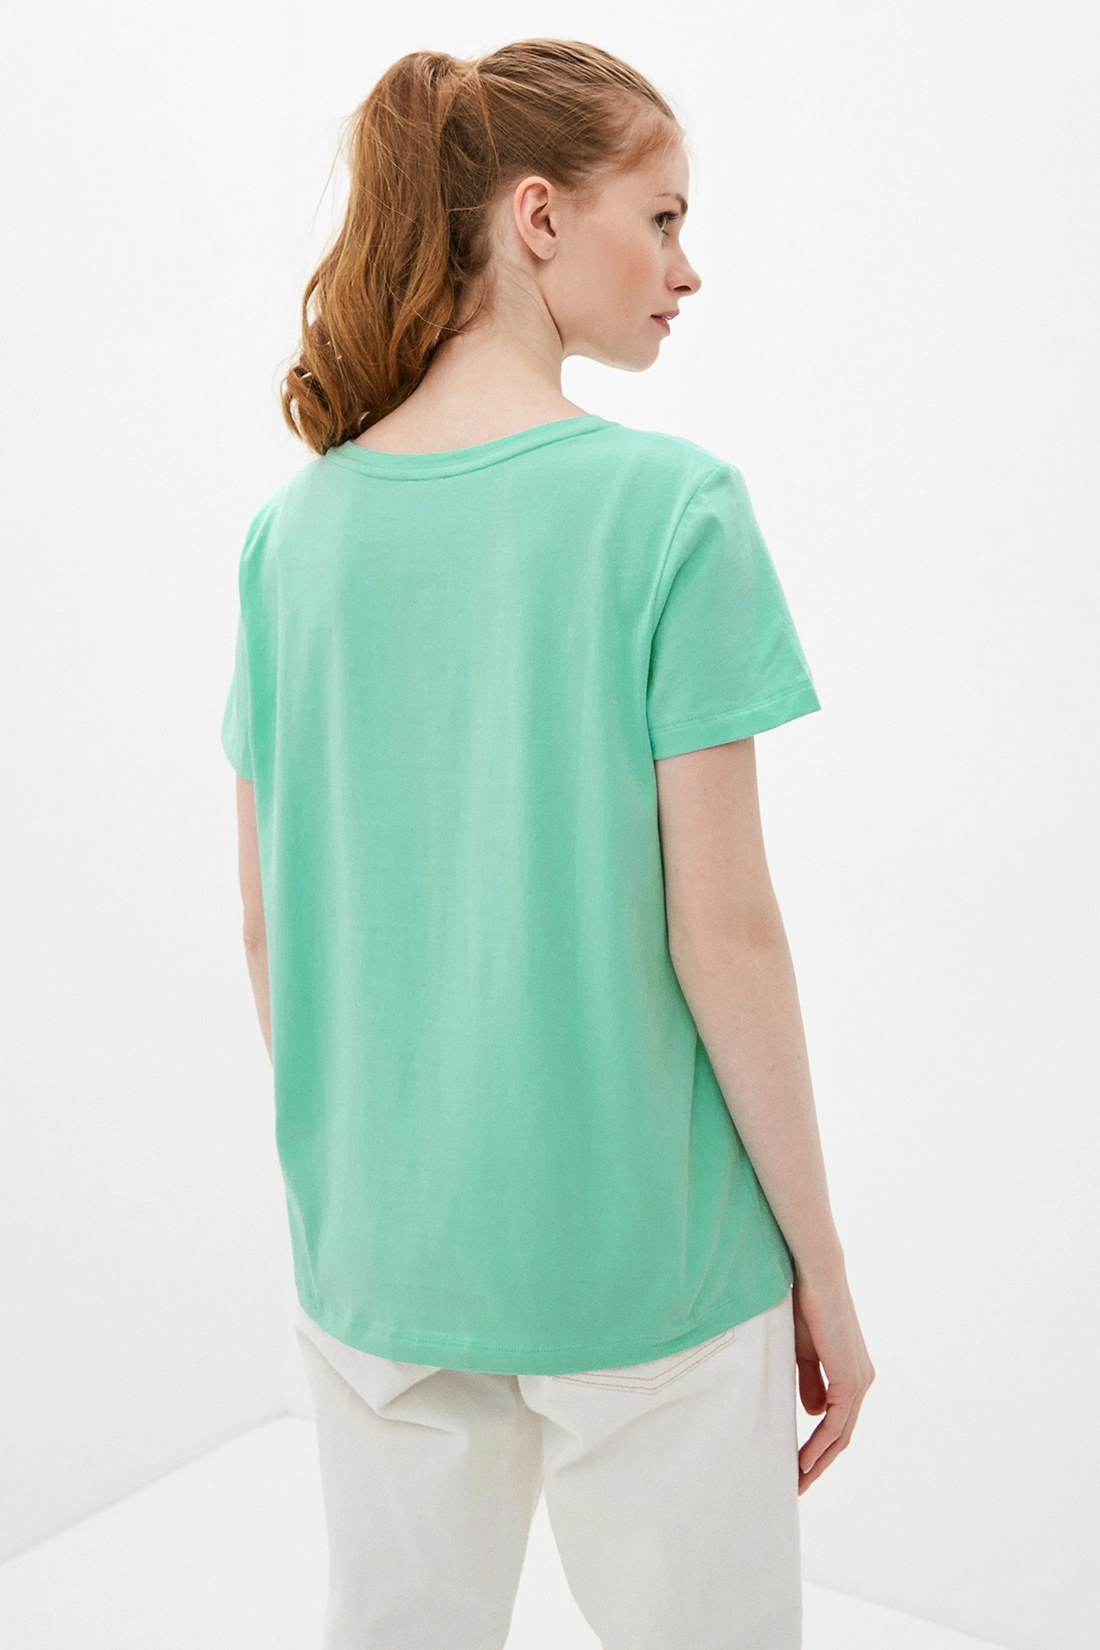 Базовая футболка (арт. baon B230202), размер XL, цвет зеленый Базовая футболка (арт. baon B230202) - фото 2